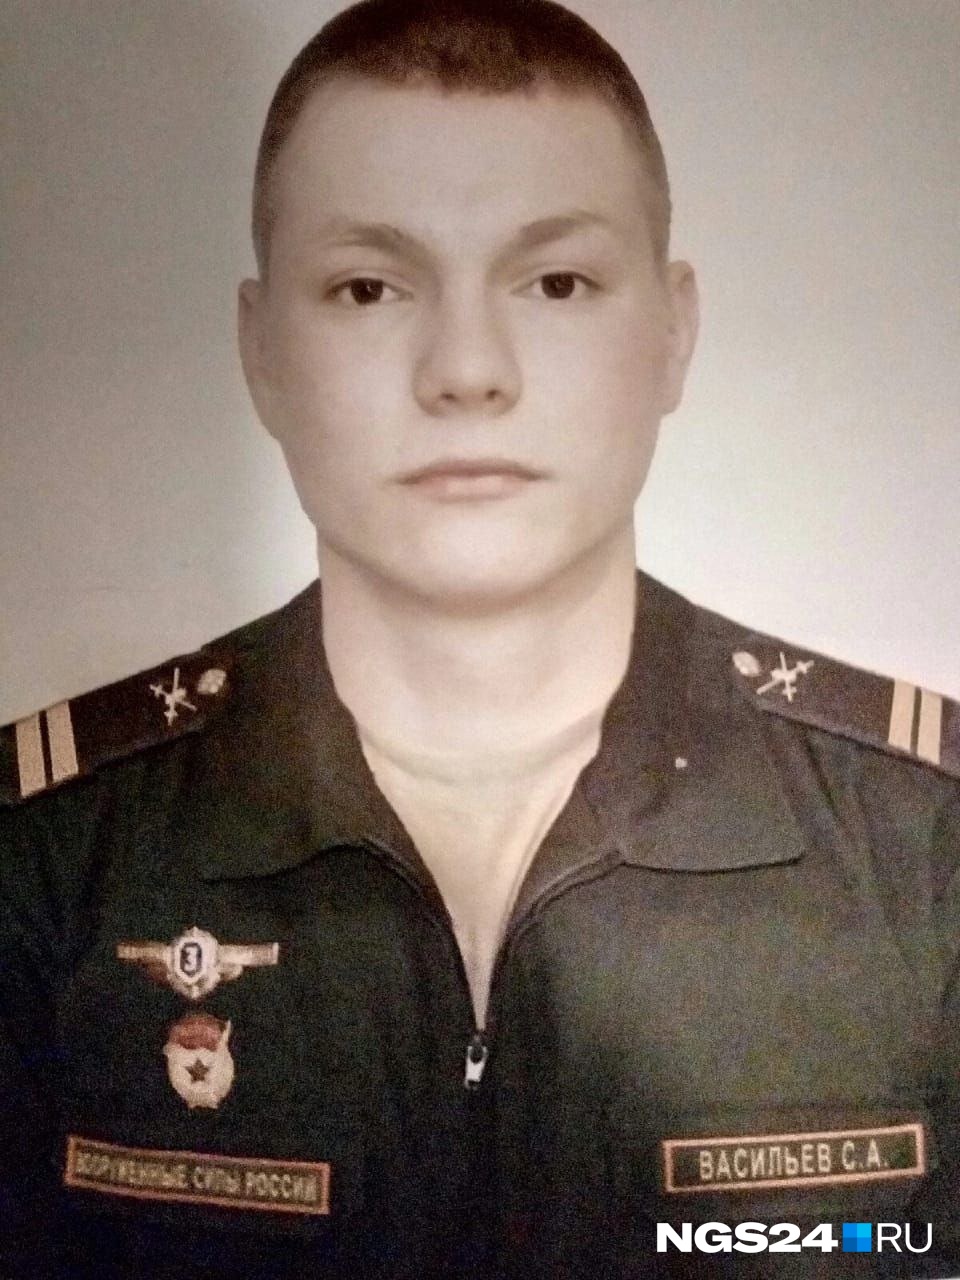 22-летний Сергей Васильев был родом из Эвенкии